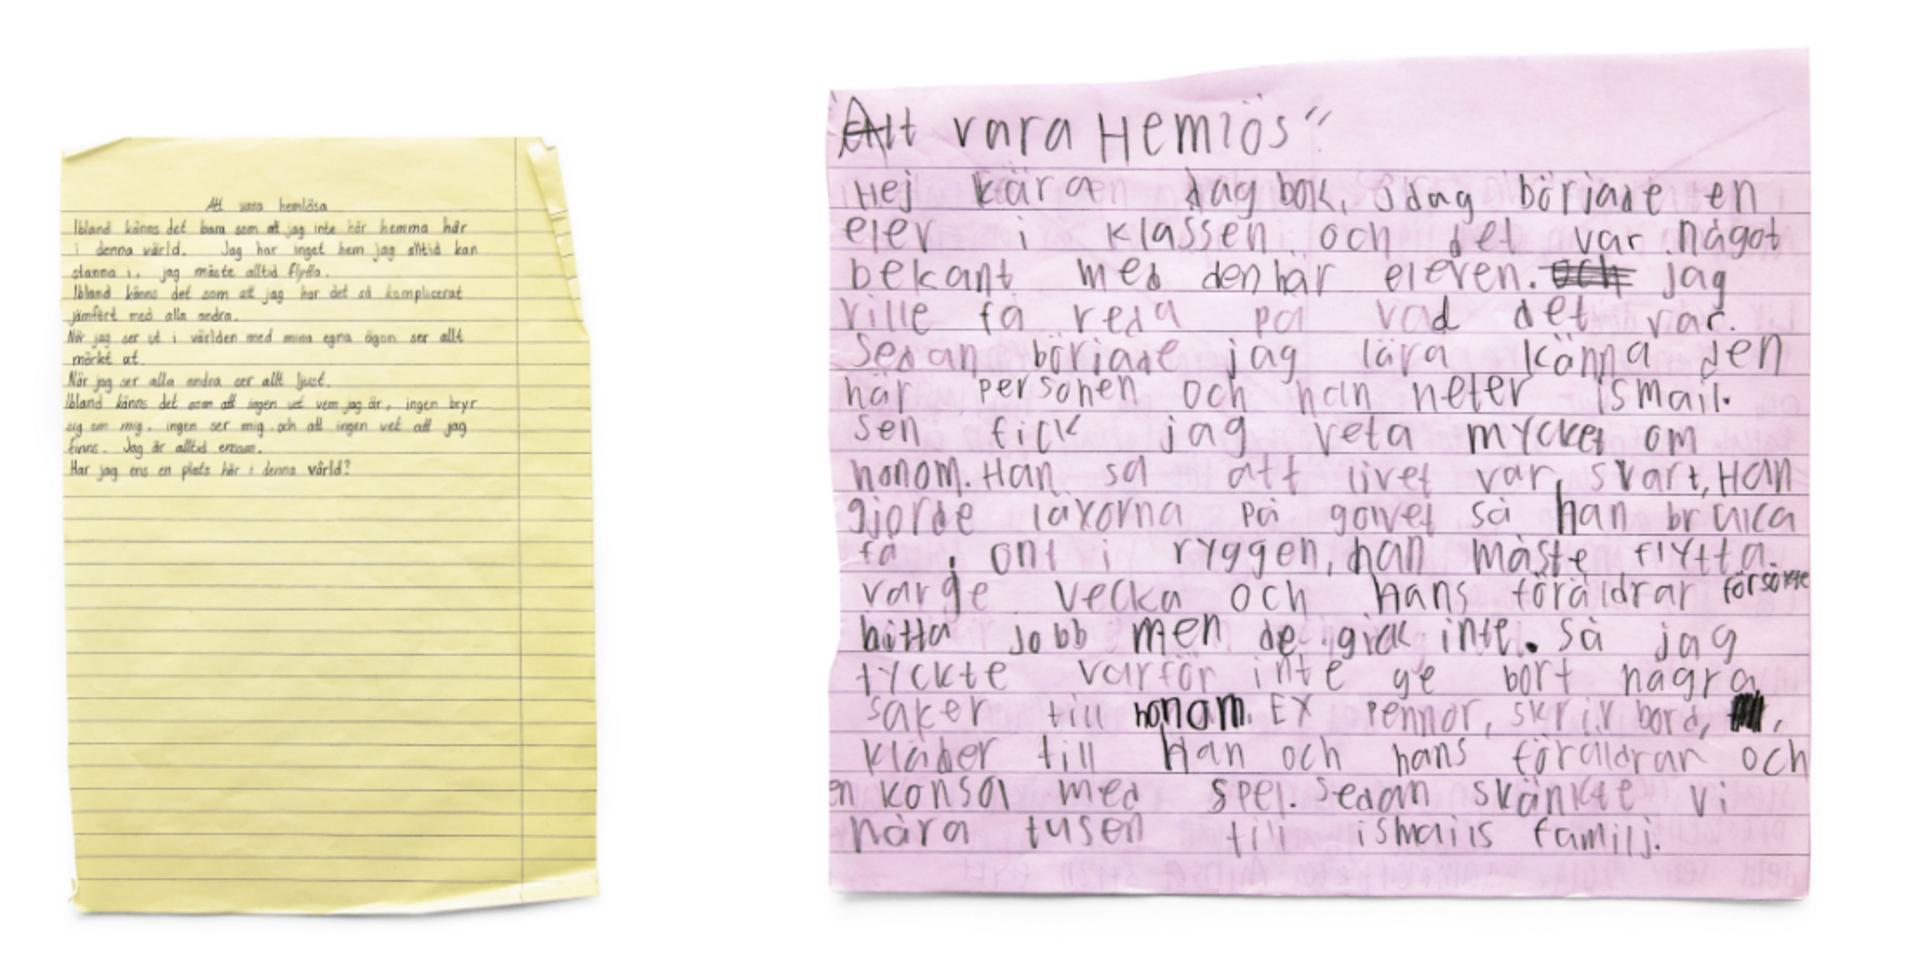 Texter från barn som skriver om hemlöshet.